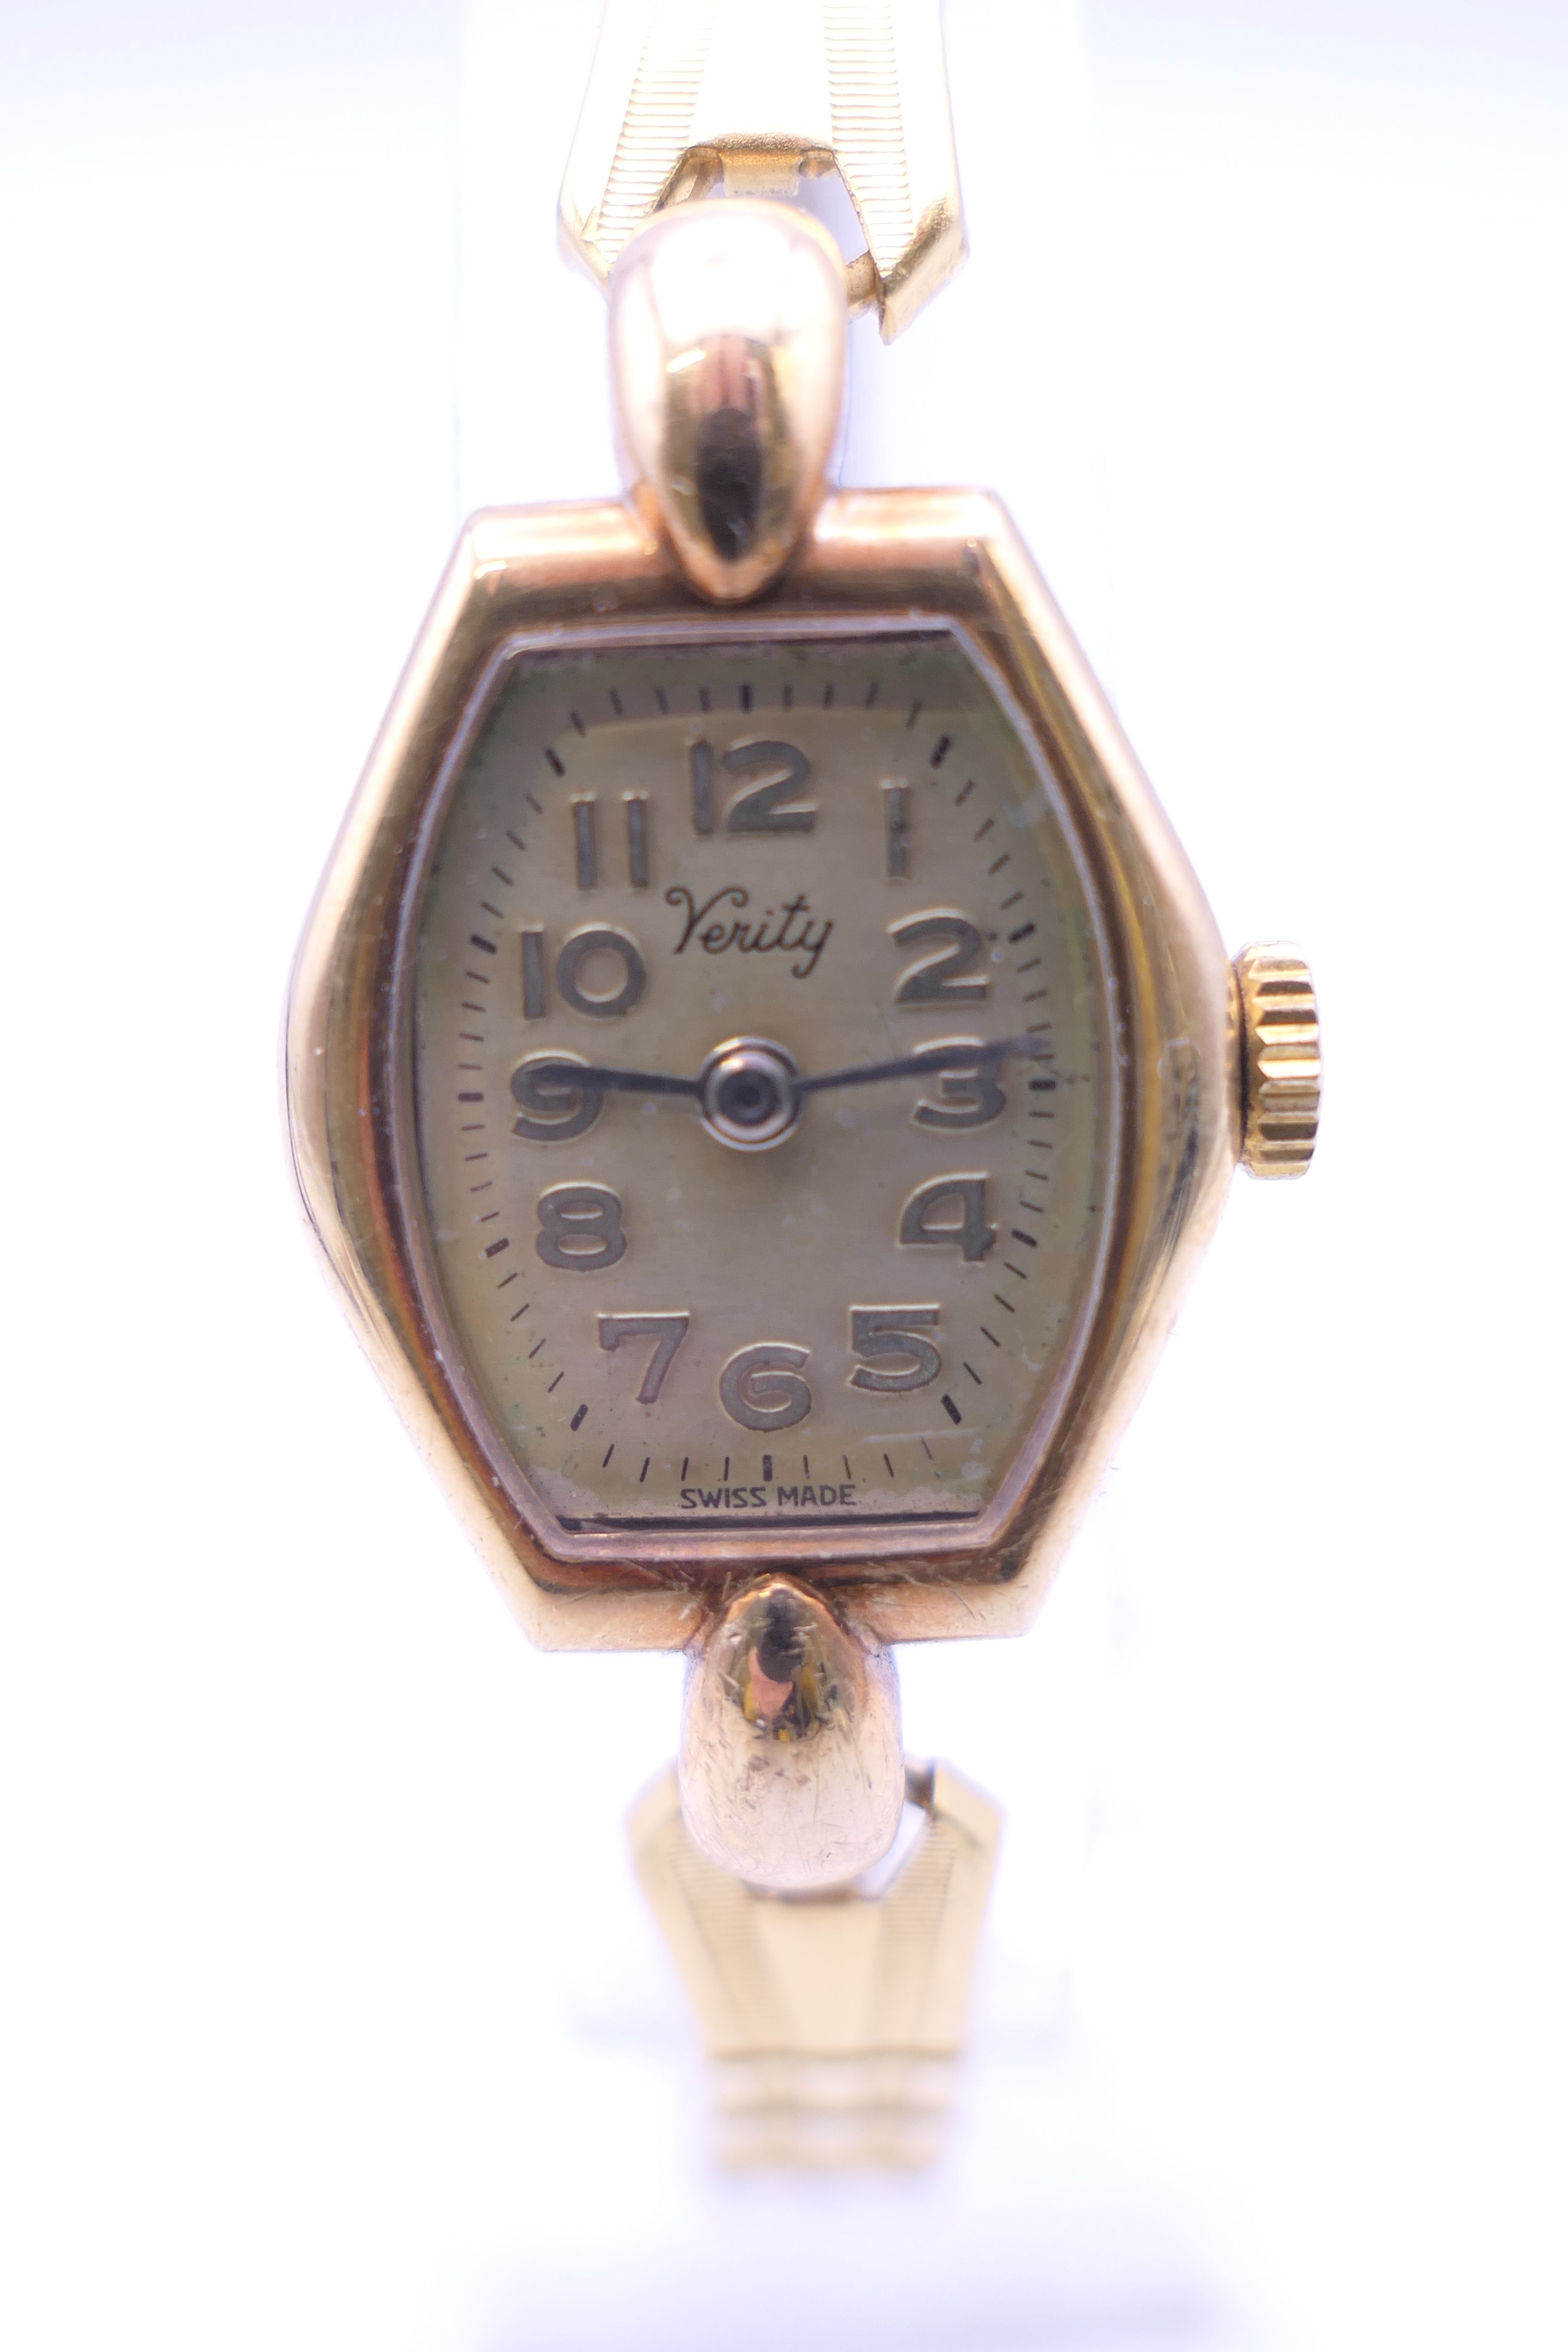 A Majex wristwatch, - Image 12 of 18